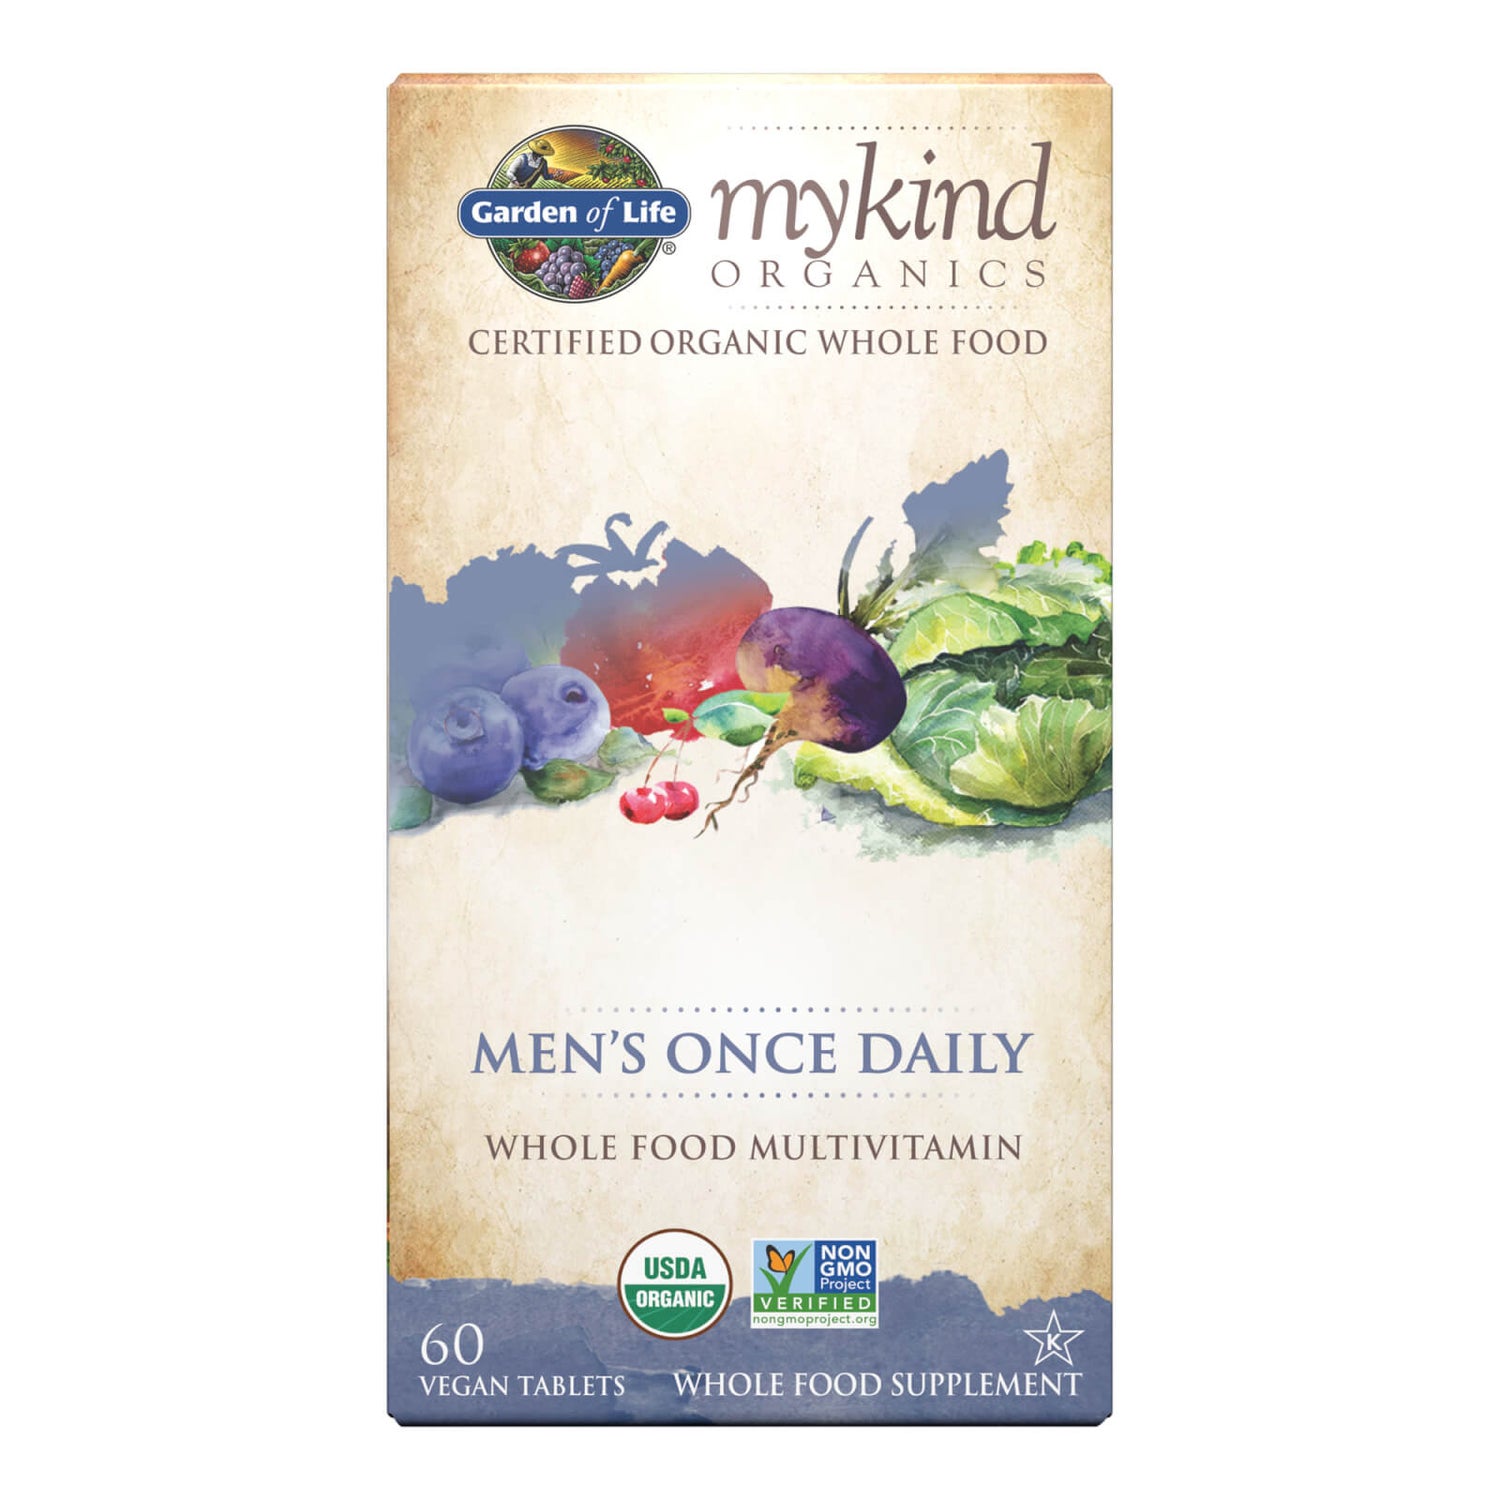 Comprimidos para hombre uno al día mykind Organics - 60 comprimidos